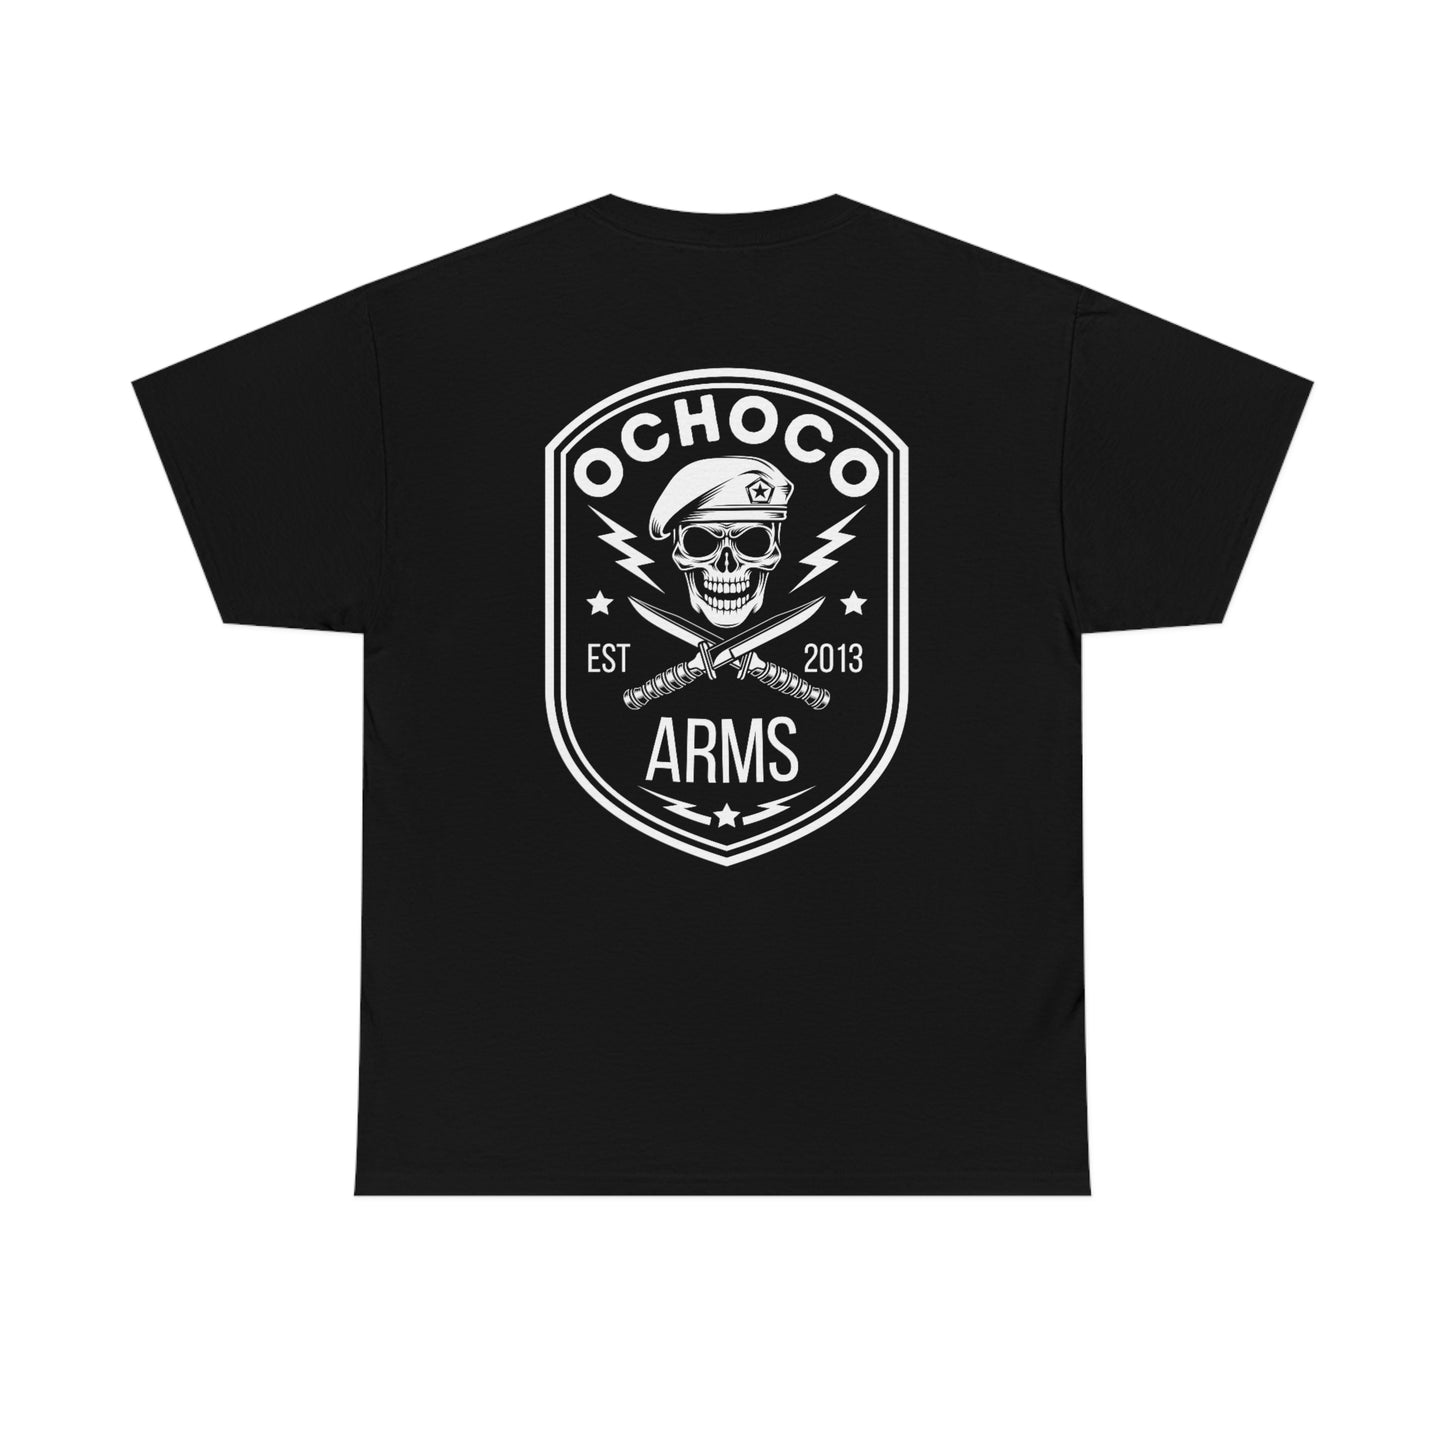 Ochoco Arms Est T-Shirt